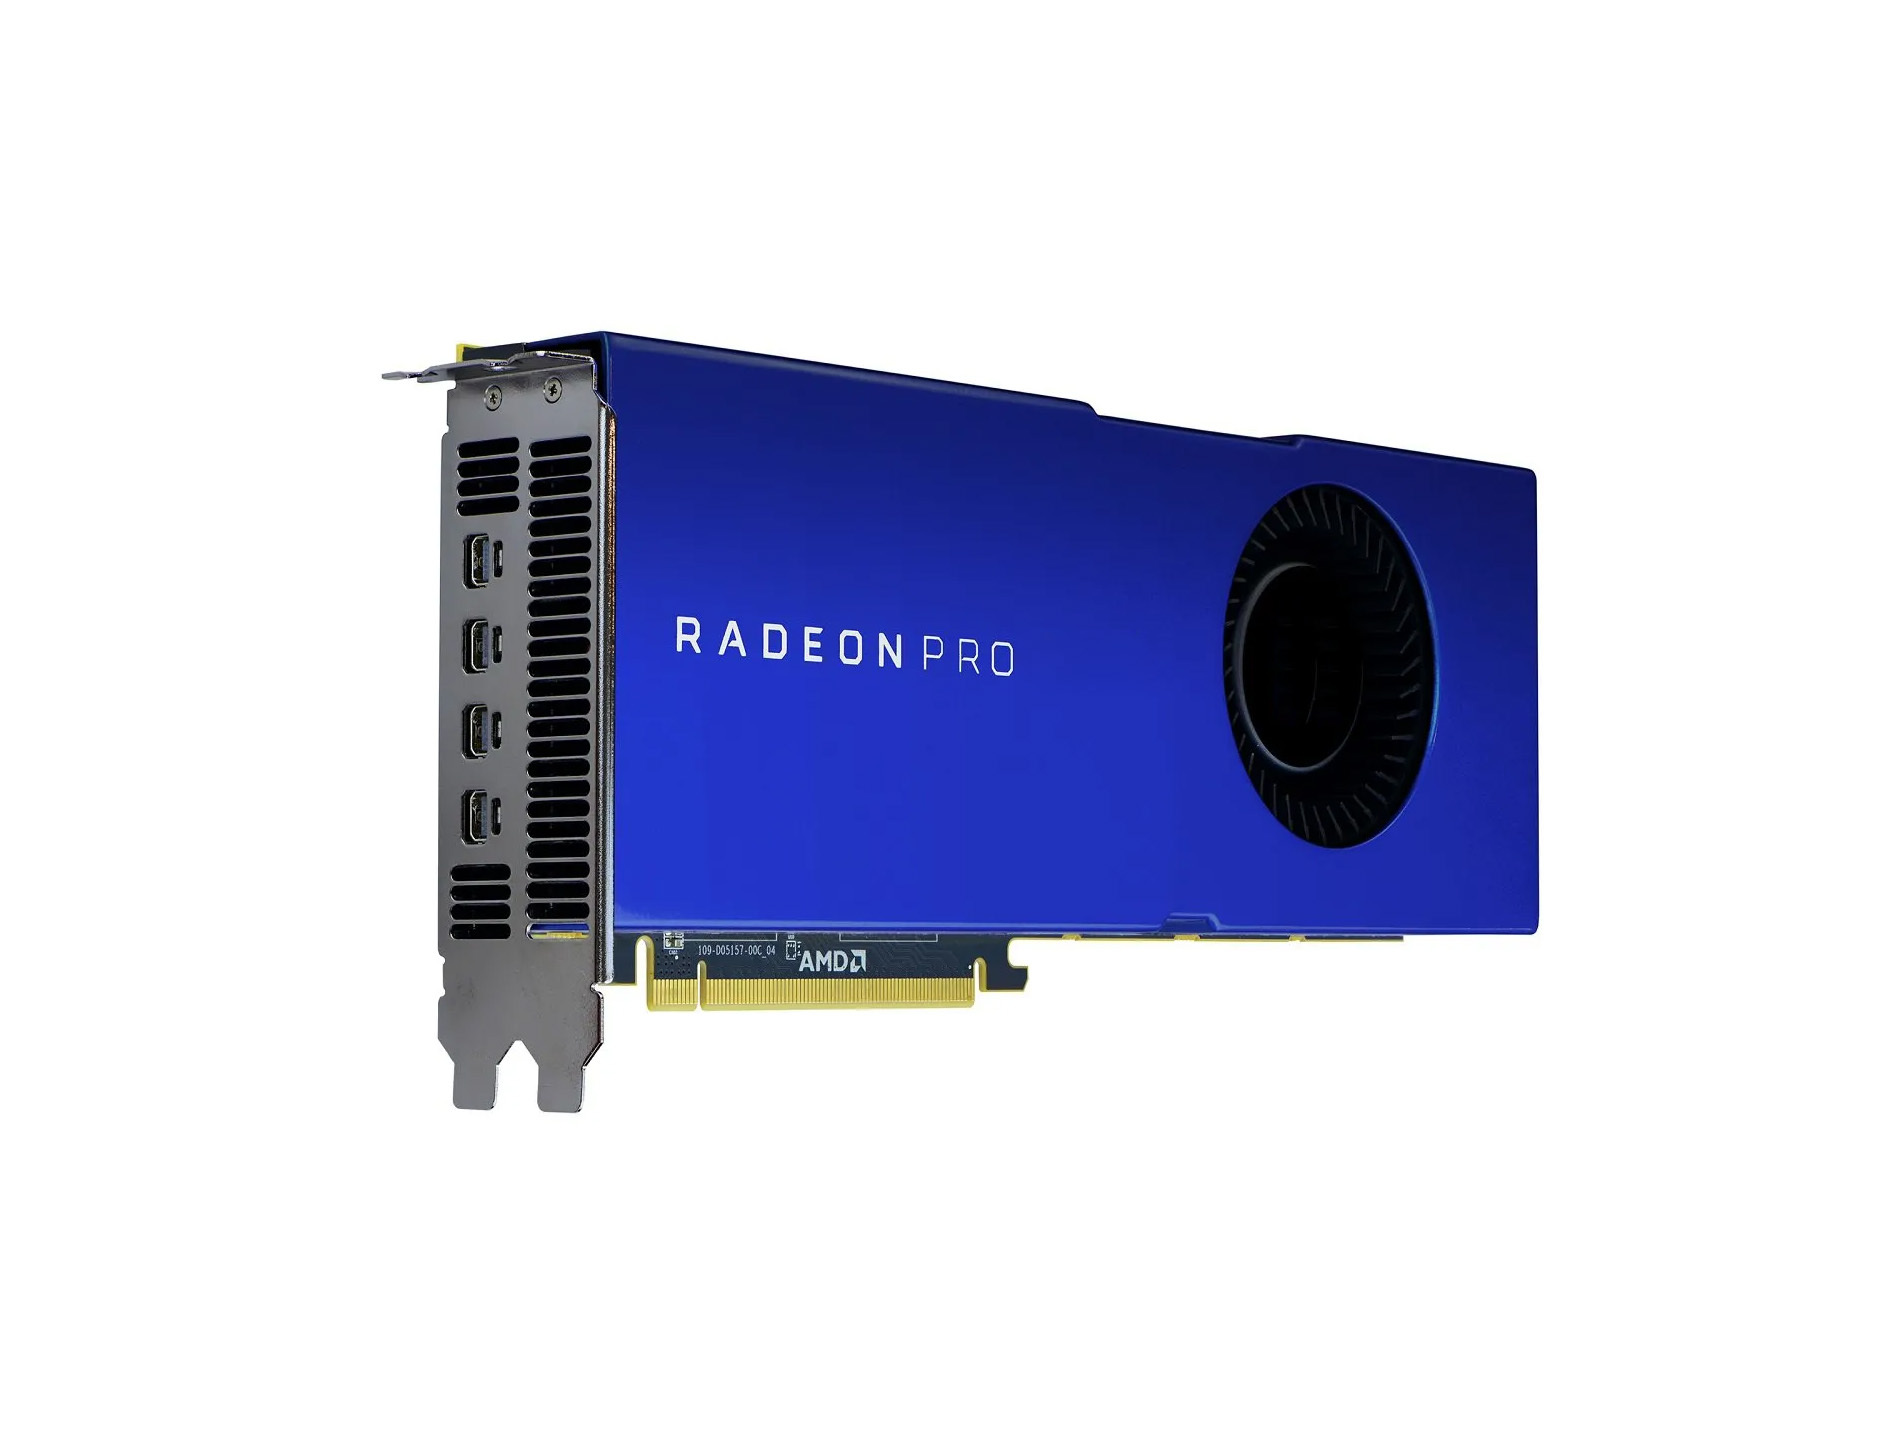 Radeon pro v320 - PCパーツ